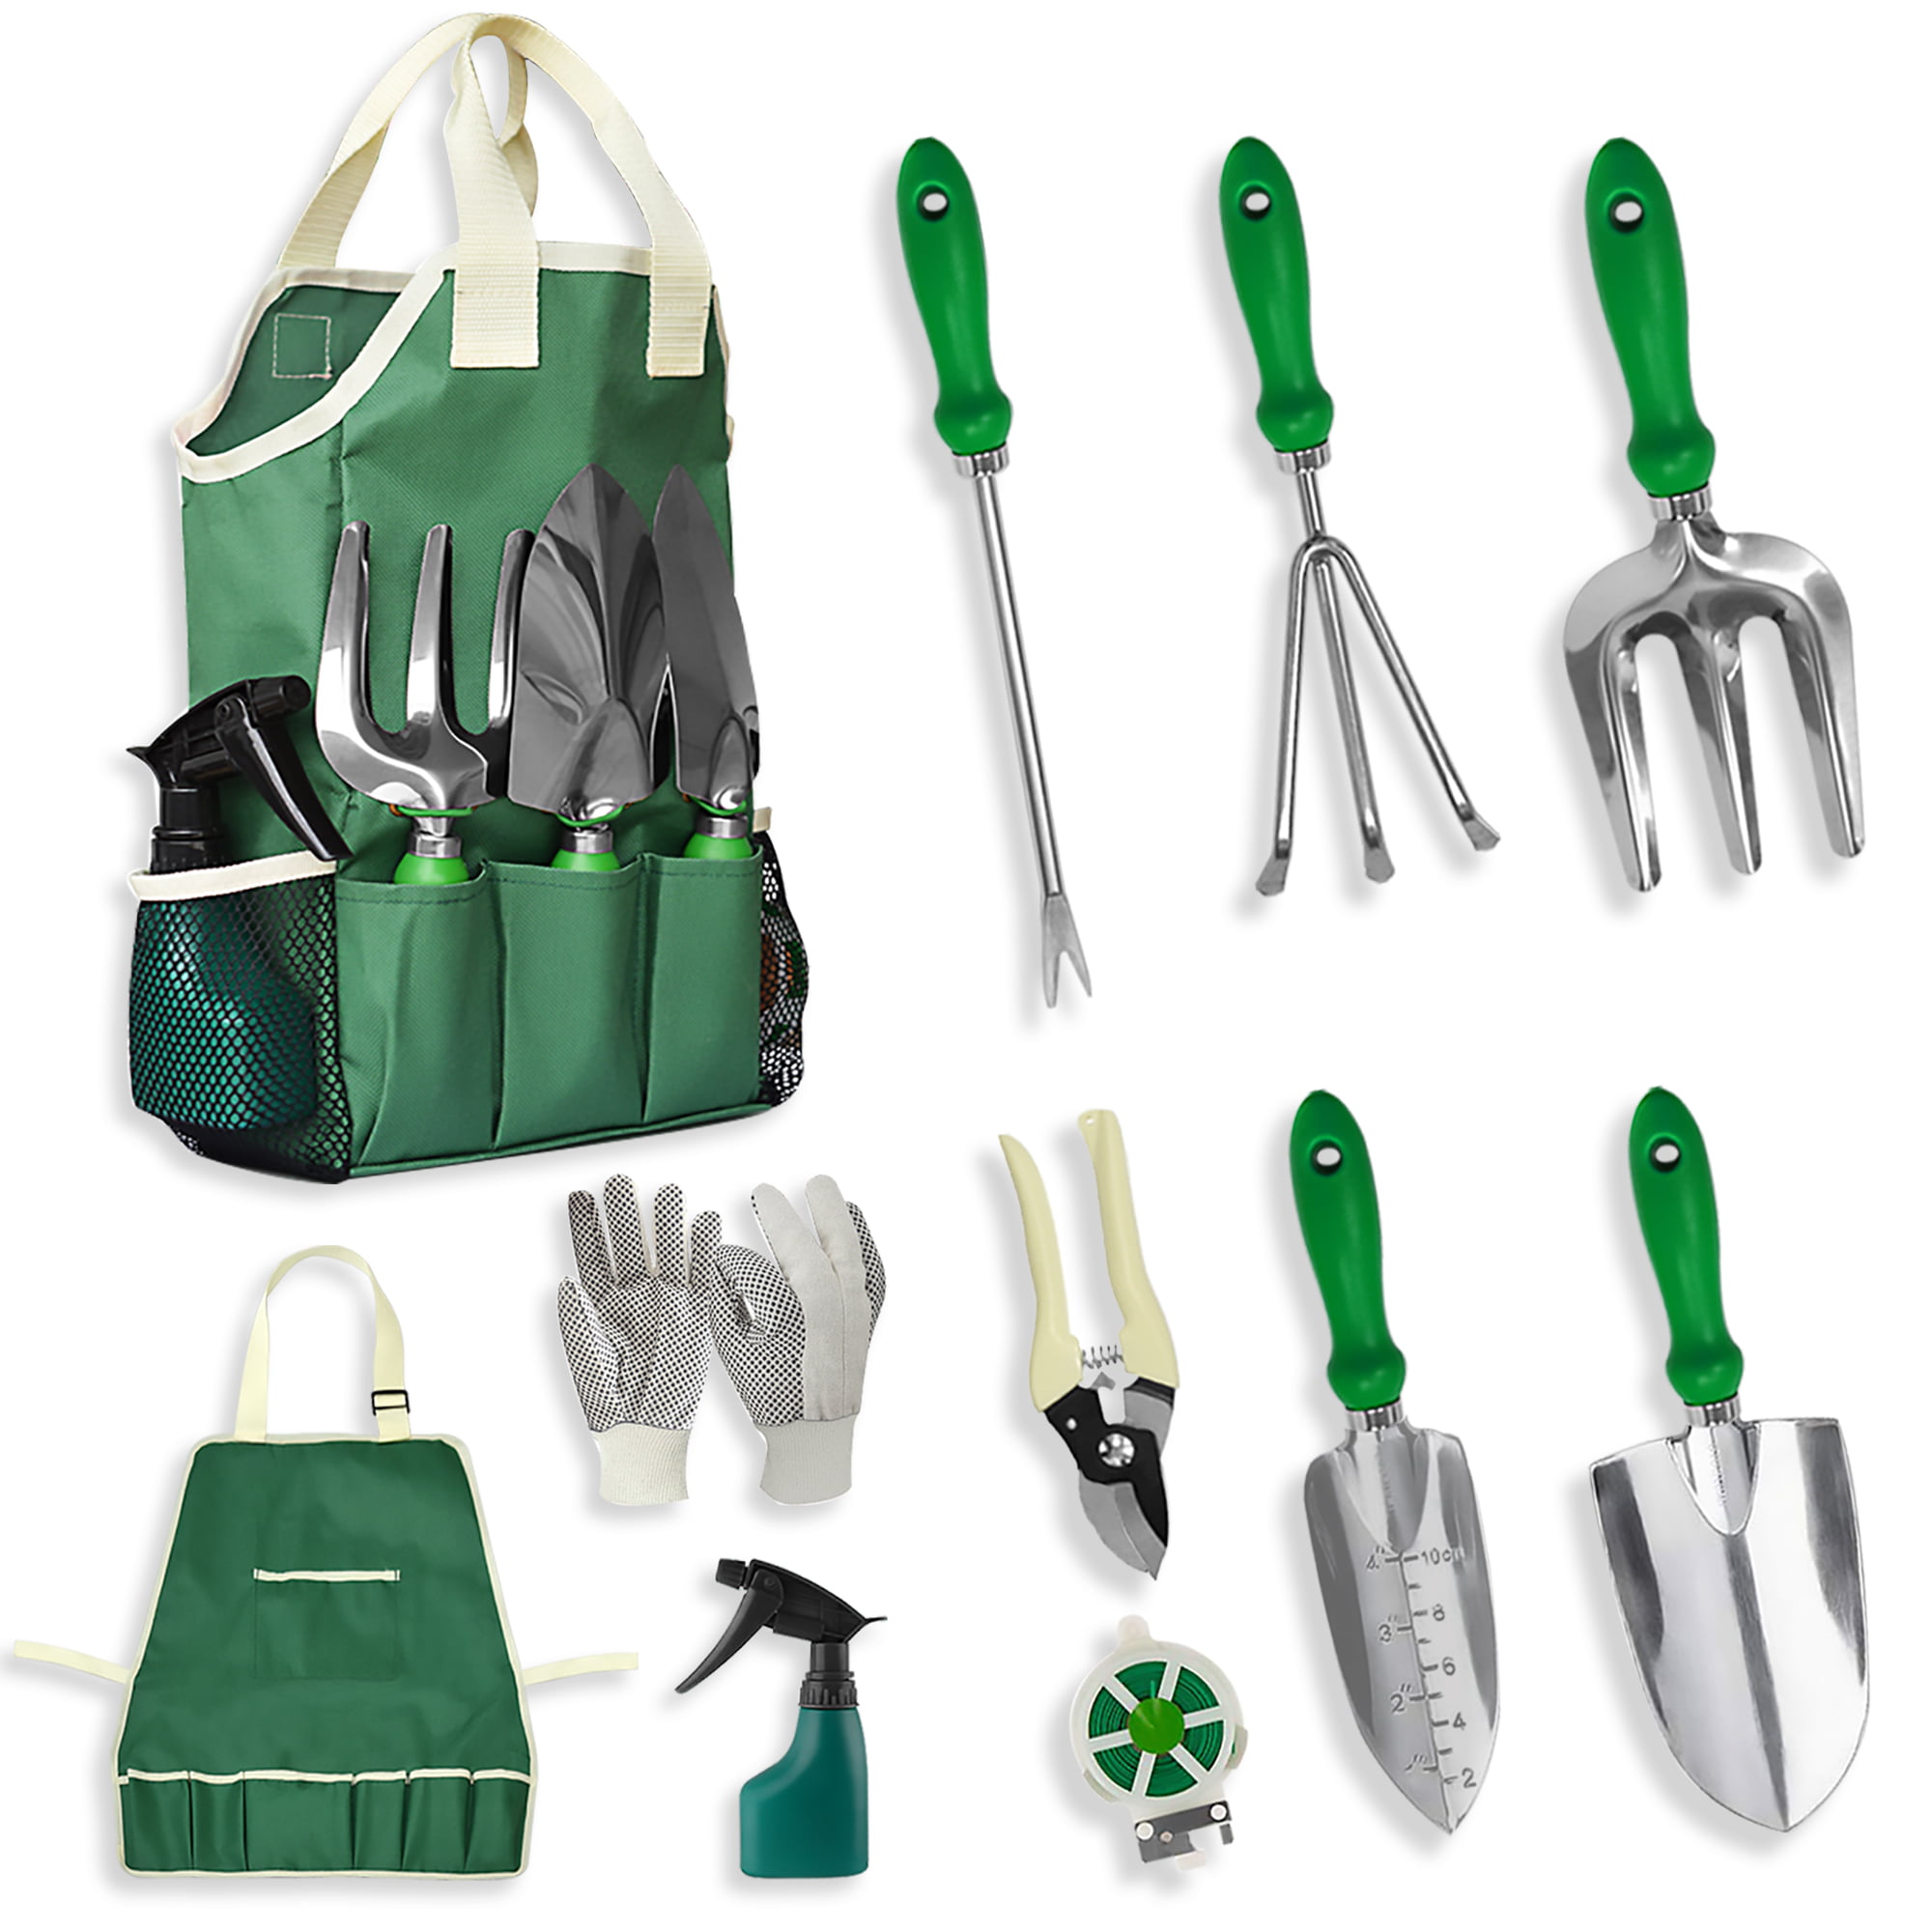 LYNN Manual Hand Weeder Weeding Weed Remover Puller Tool Fork Sponge Grip Lawn Garden Tools Stainless Steel